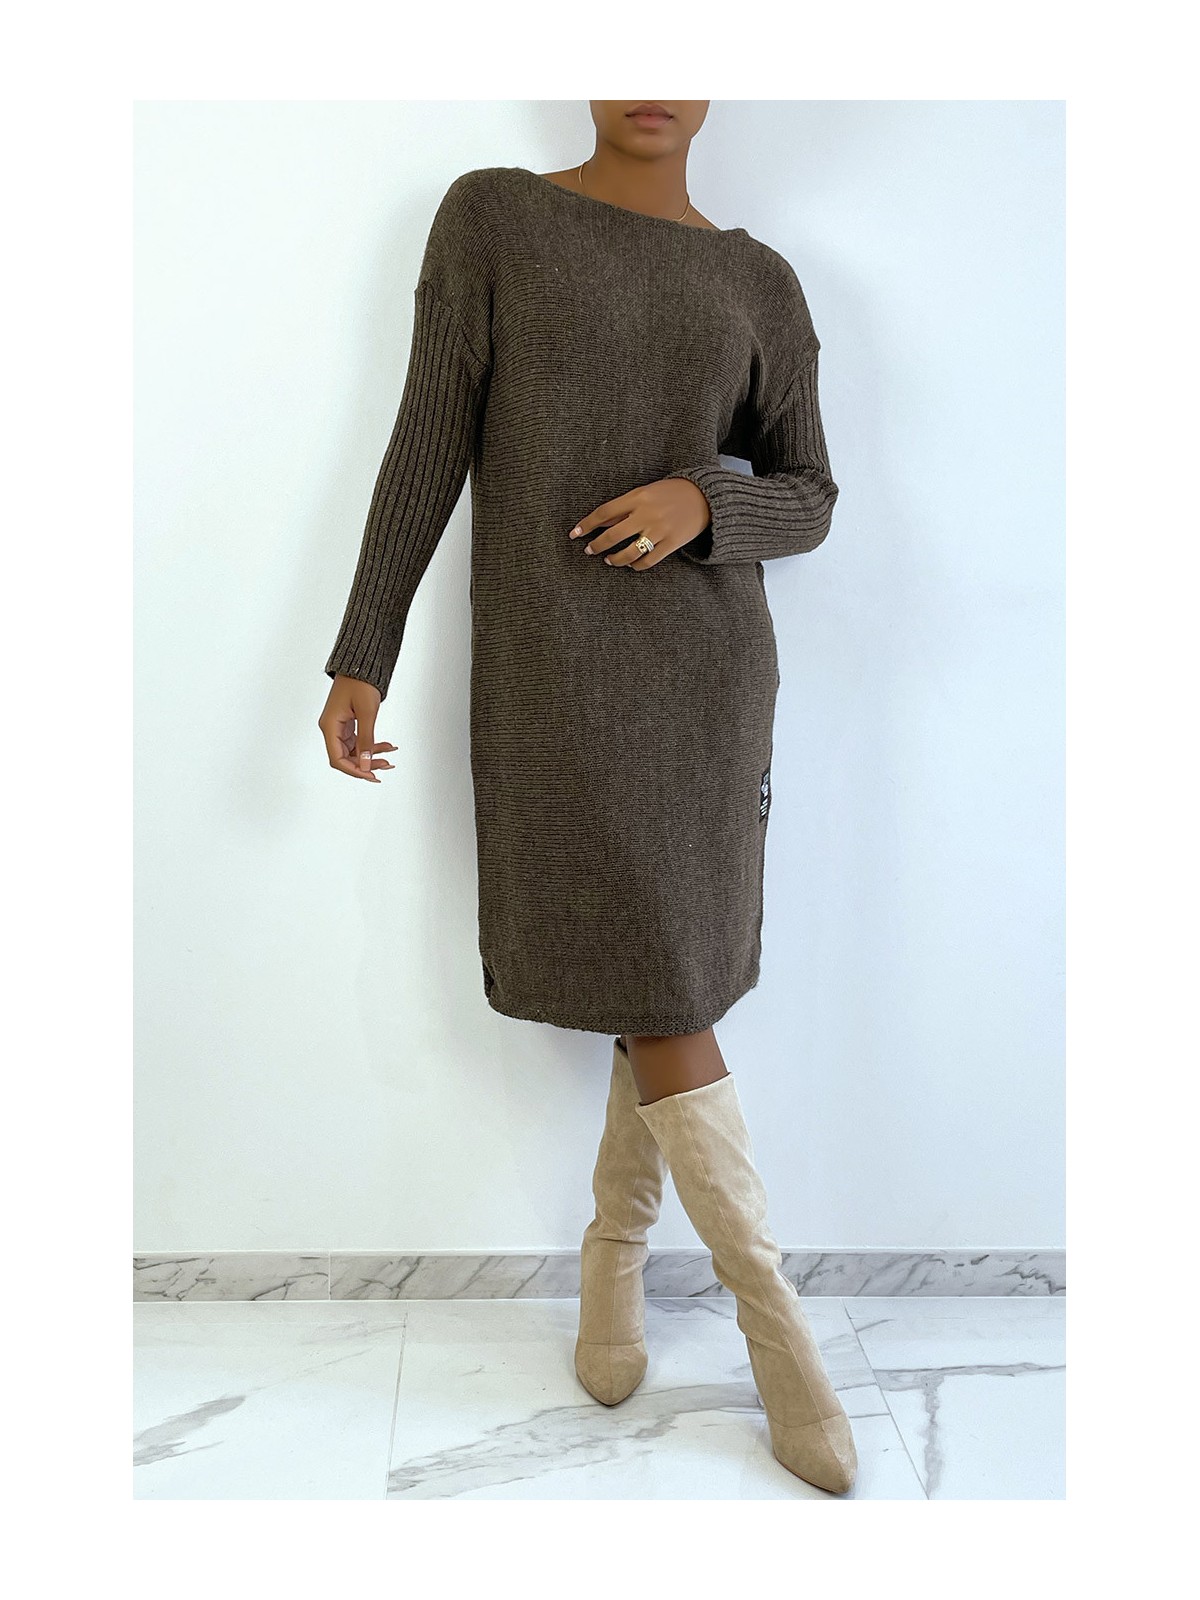 LoLLue robe pull marron composé de laine et de mohair - 1